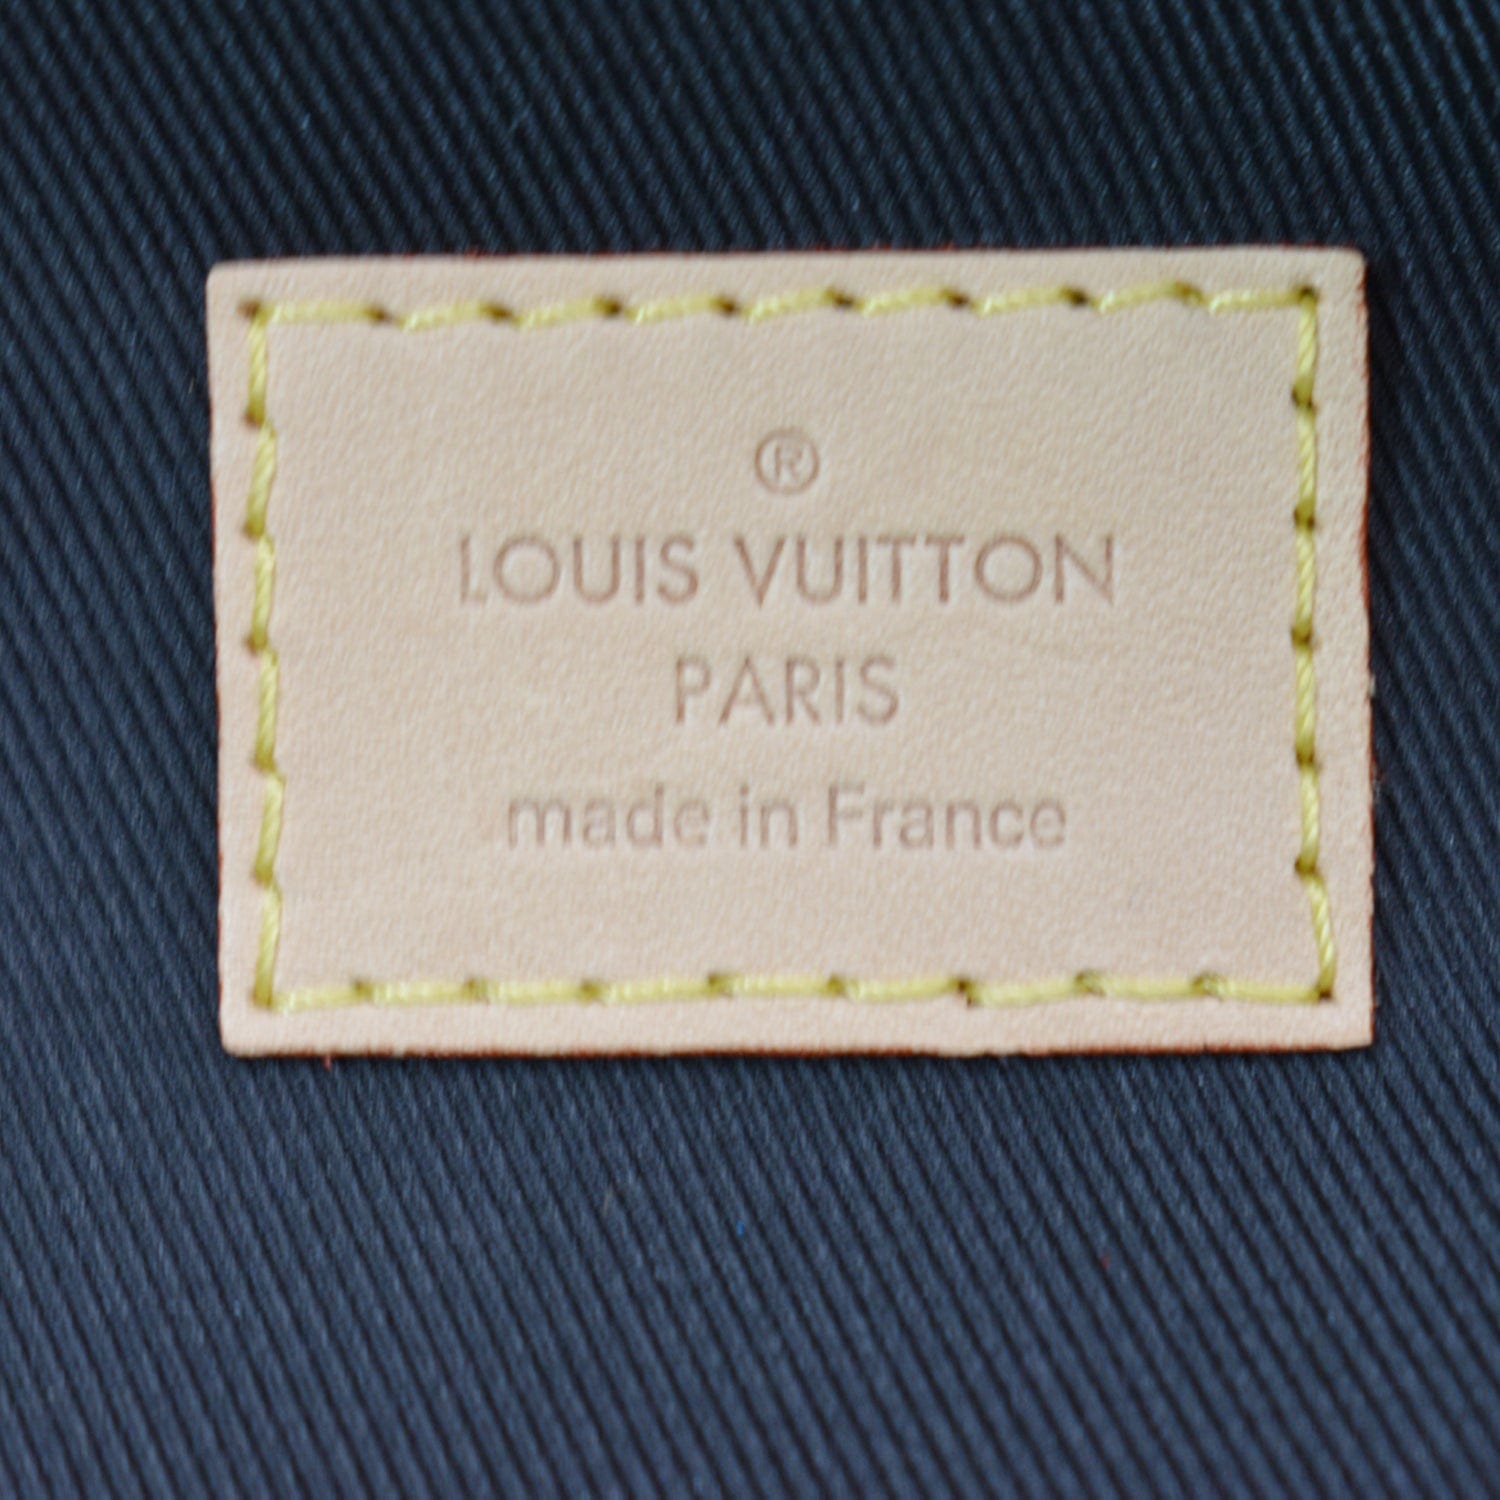 LOUIS VUITTON LVXLOL Monogram Bumbag Multicolor